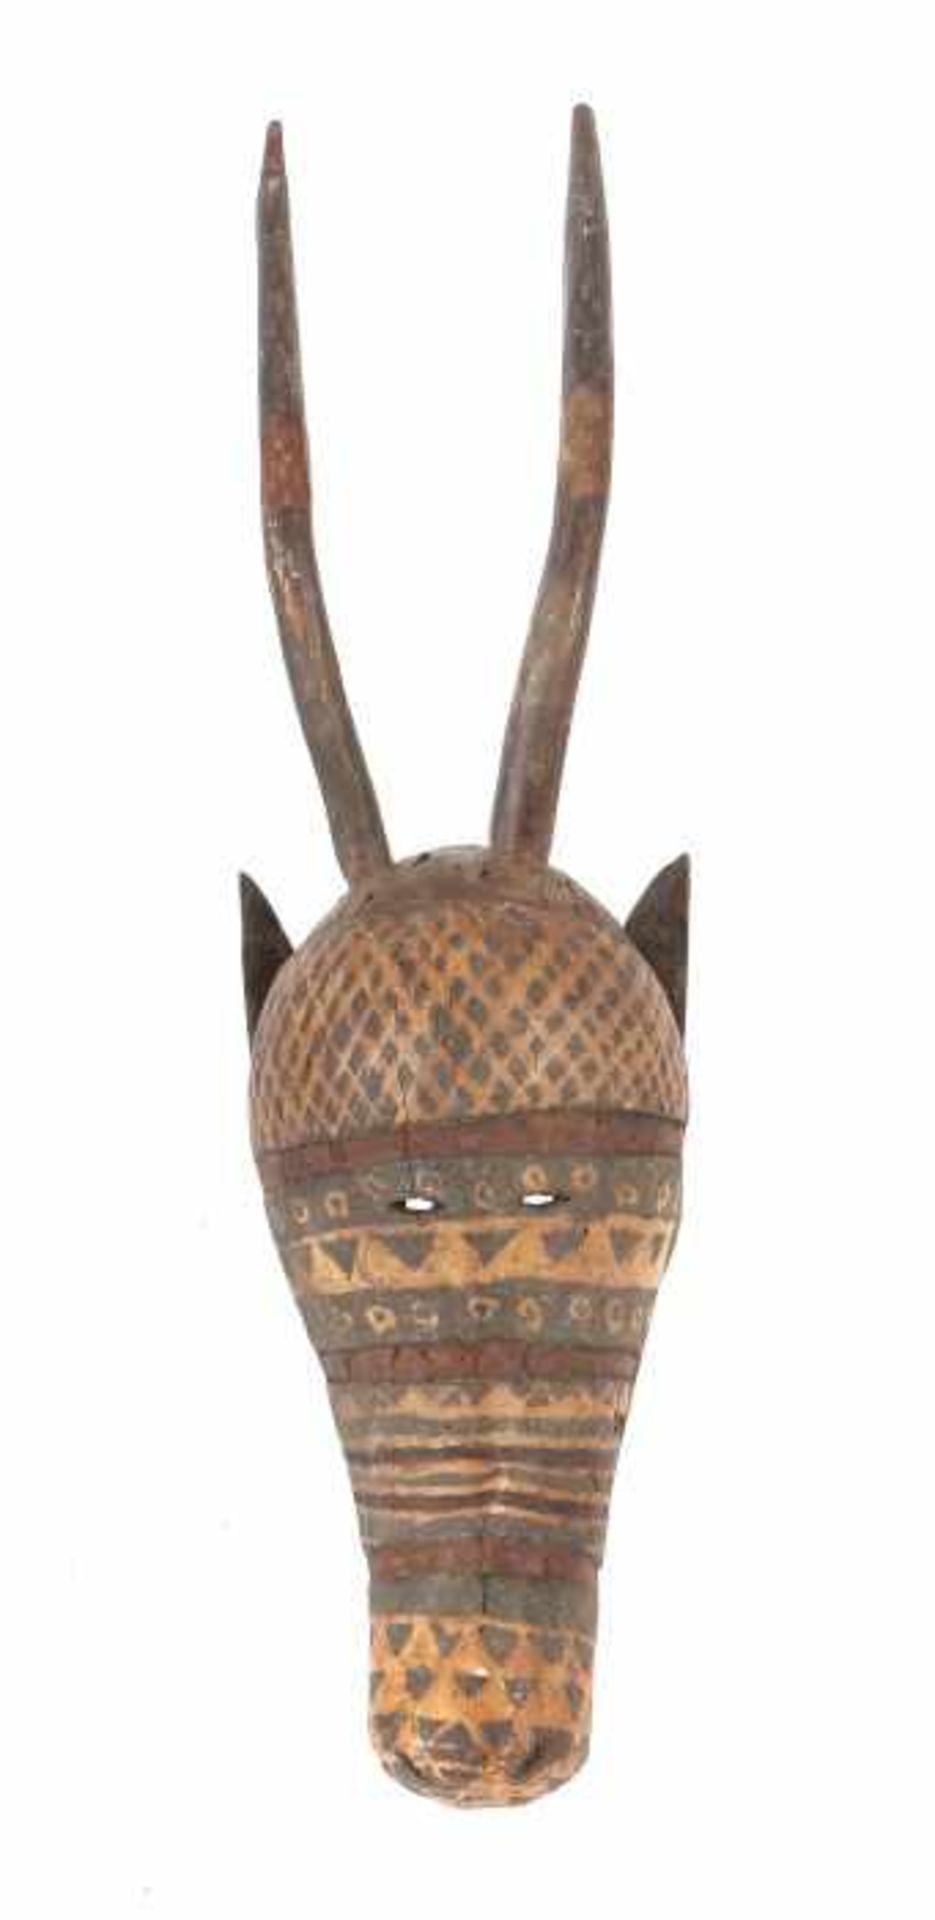 Antilopen Maske der Bobo Burkina Faso, Stamm der Bobo Bwa, Holz, Kopfaufsatzmaske mit Augenschlitzen